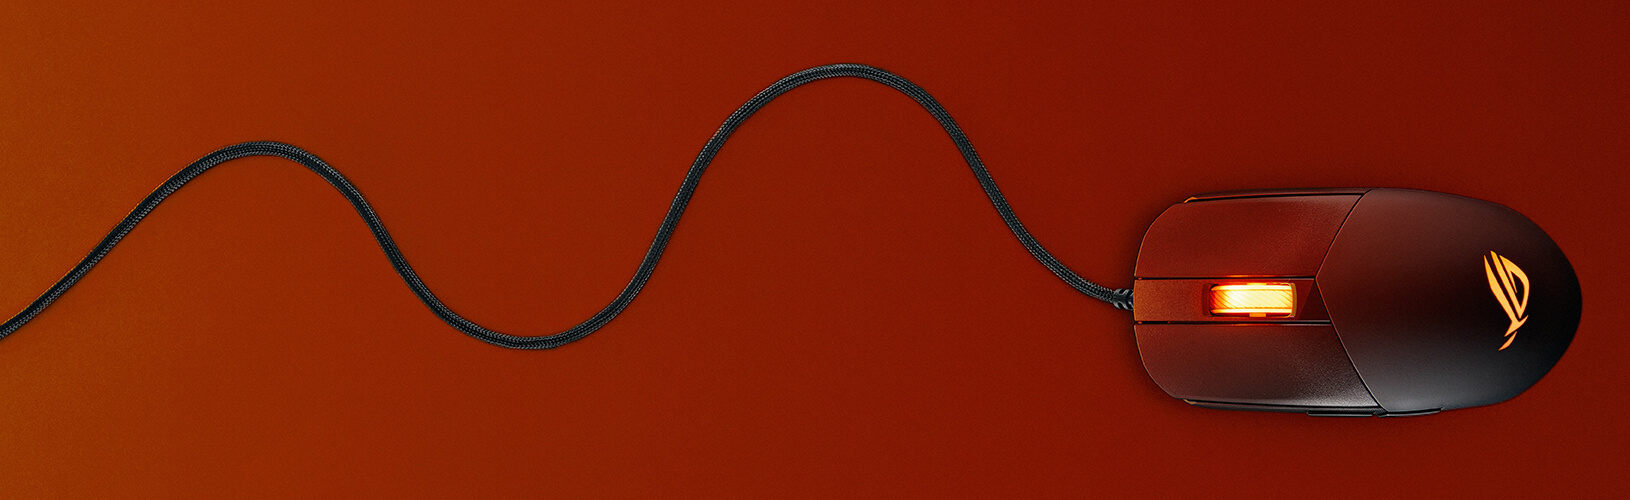 Une image montrant la paracorde flexible sur la ROG Strix Impact III.